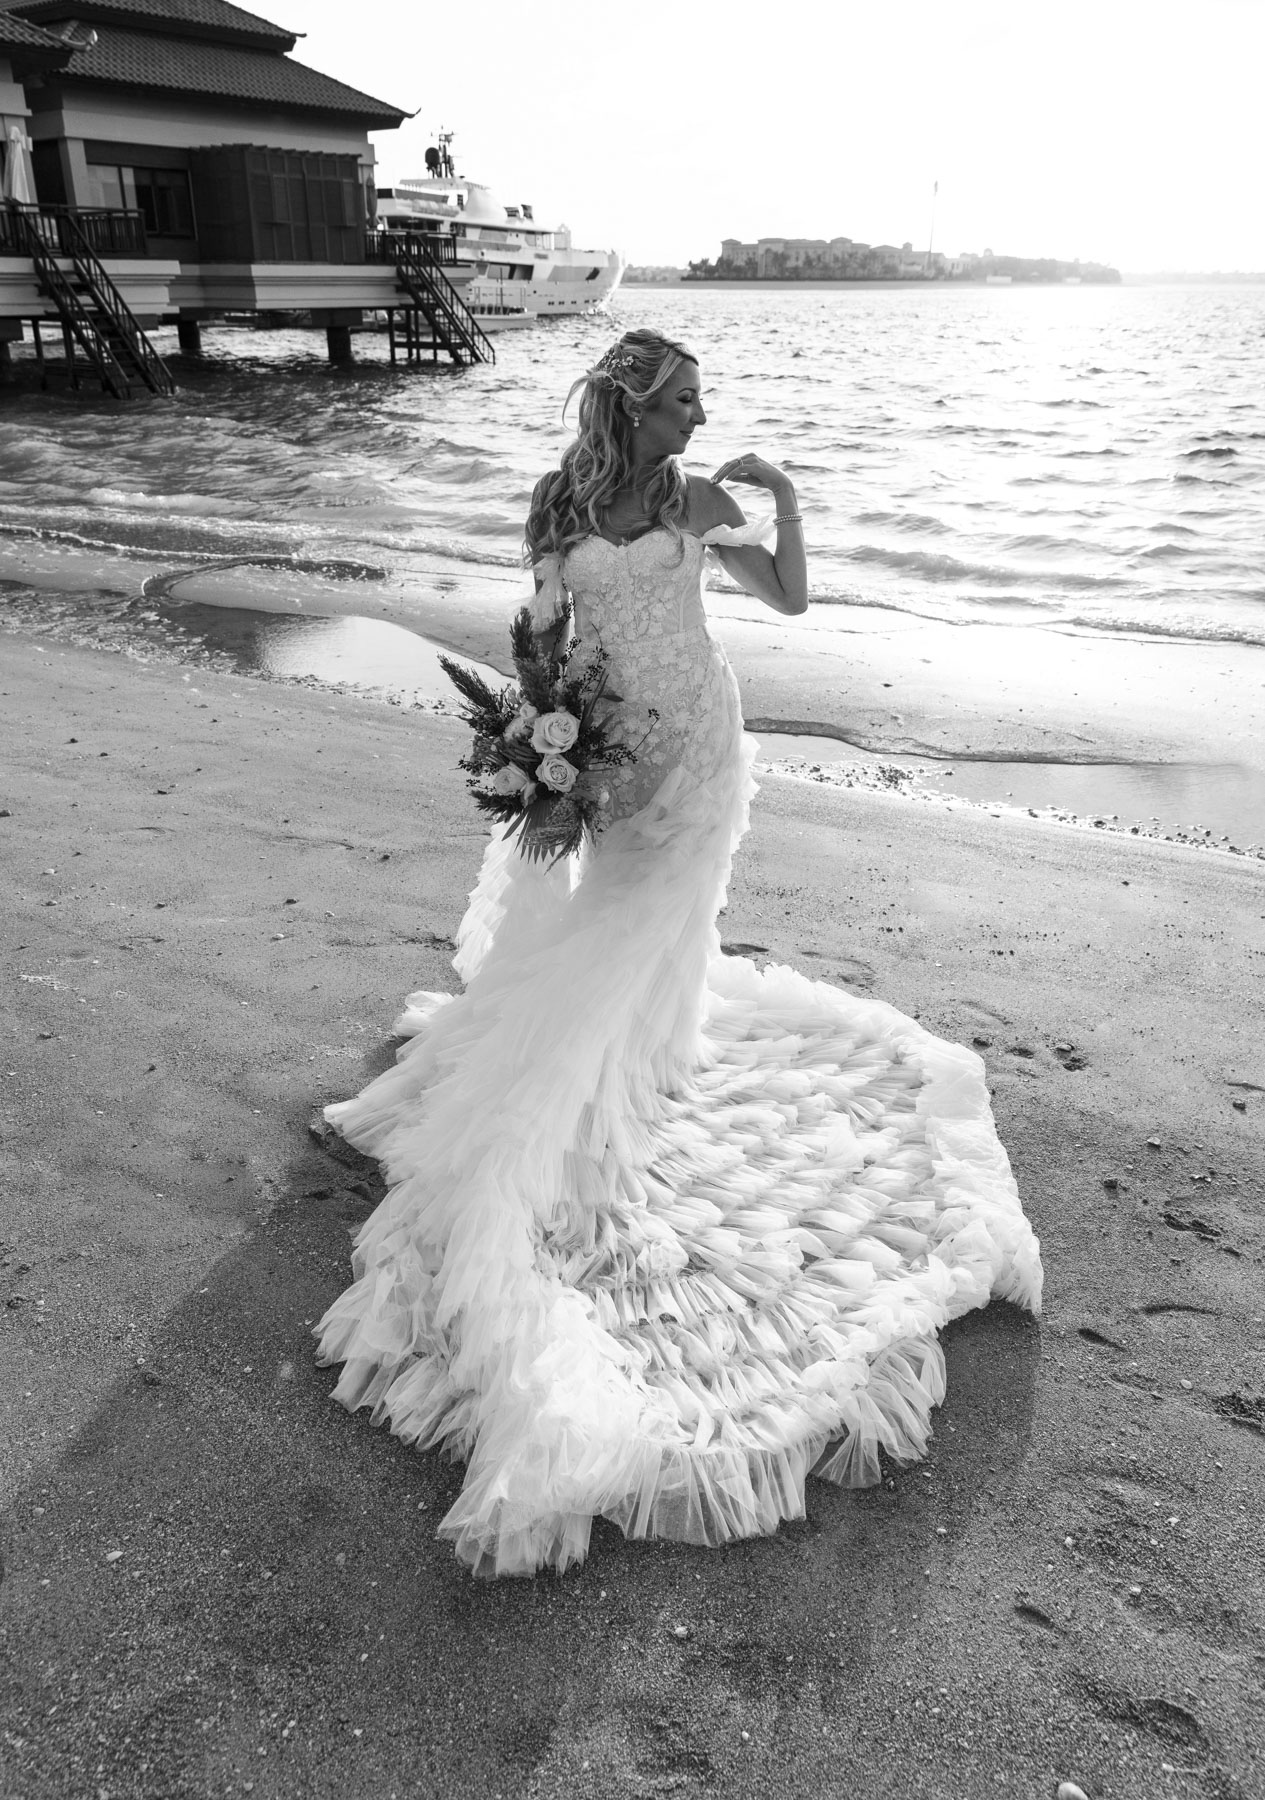 A bride at the beach